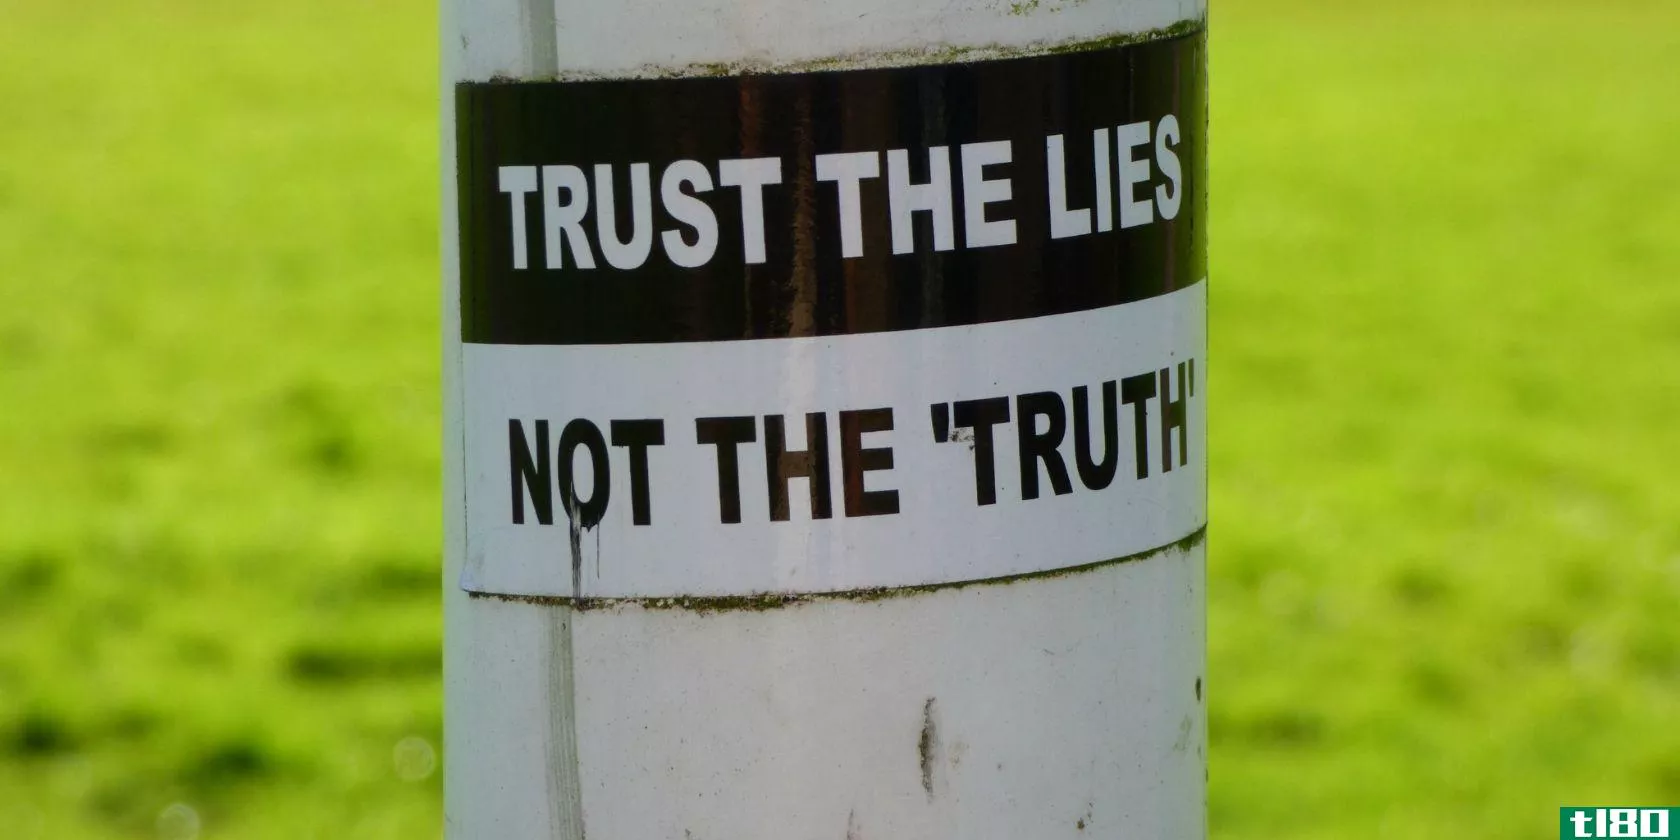 trust-lies-not-truth-poster